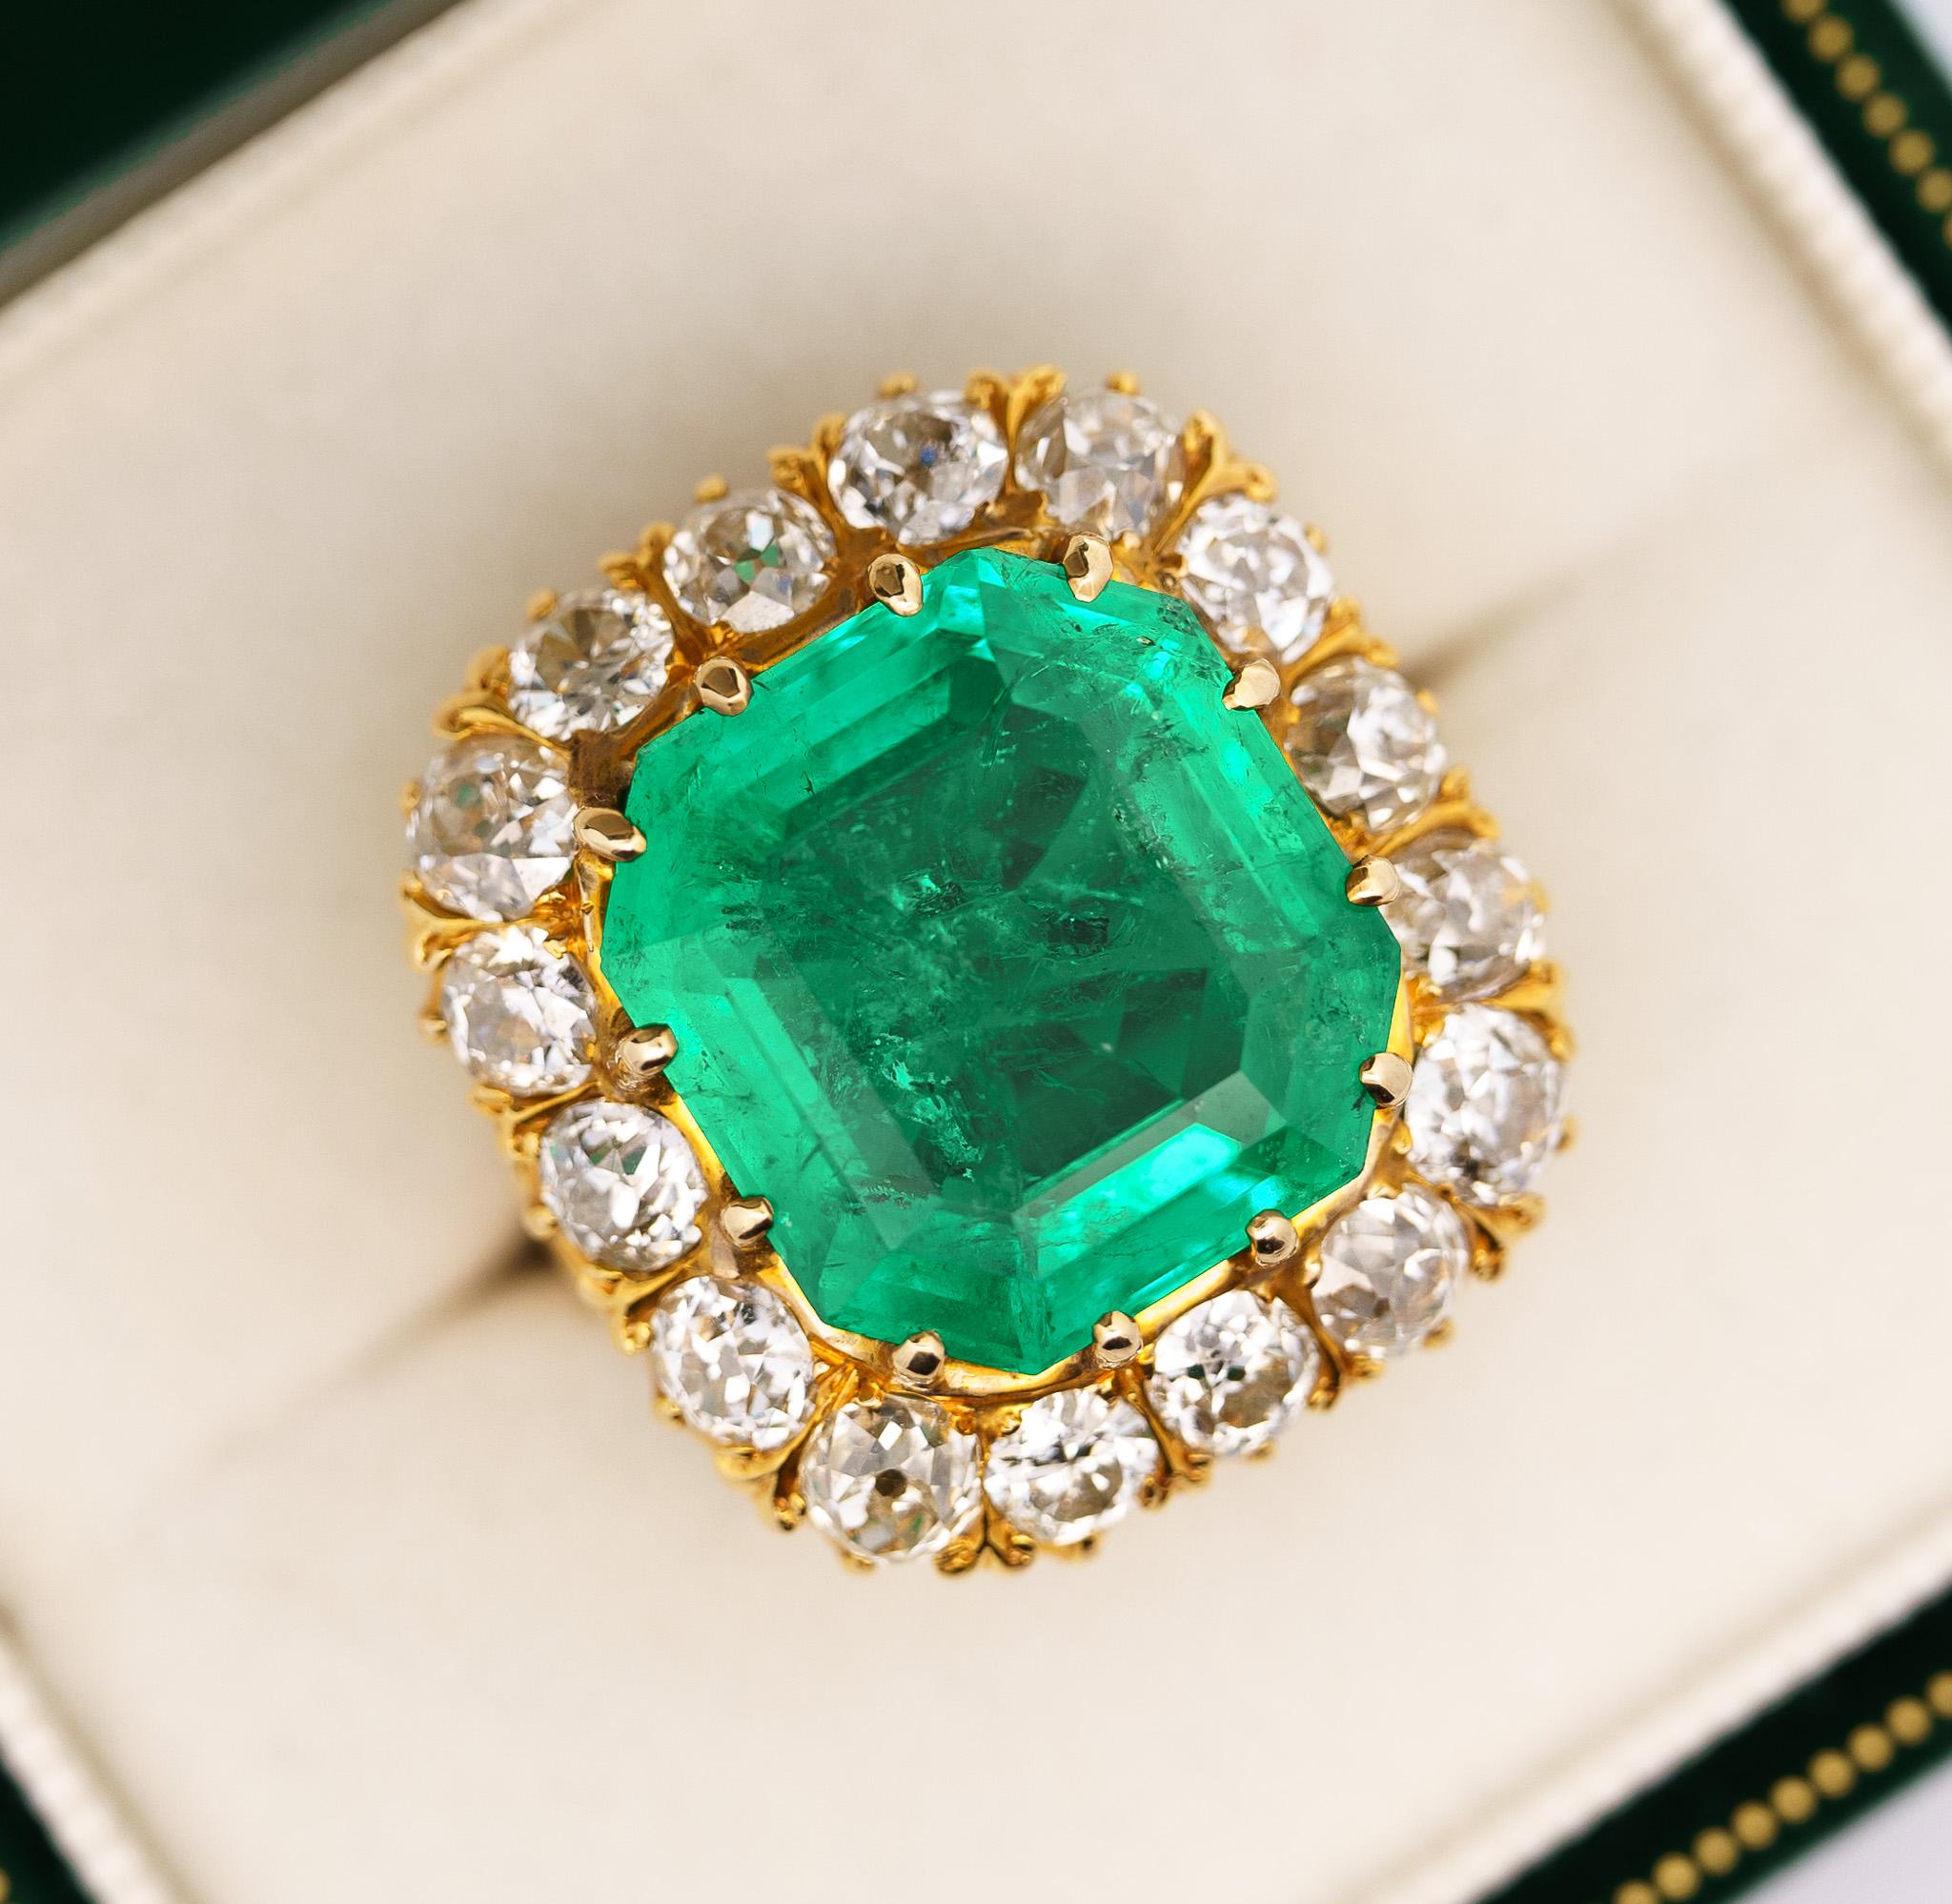 GRS Certified Vintage 14.51 Carat Octagonal Cut Insignificant Oil Colombian Emerald & Old European Cut Diamond in Carved 14K Gold Retro Style Ring Shank. 

L'émeraude présente un éclat, une couleur et une transparence phénoménaux. Une pierre